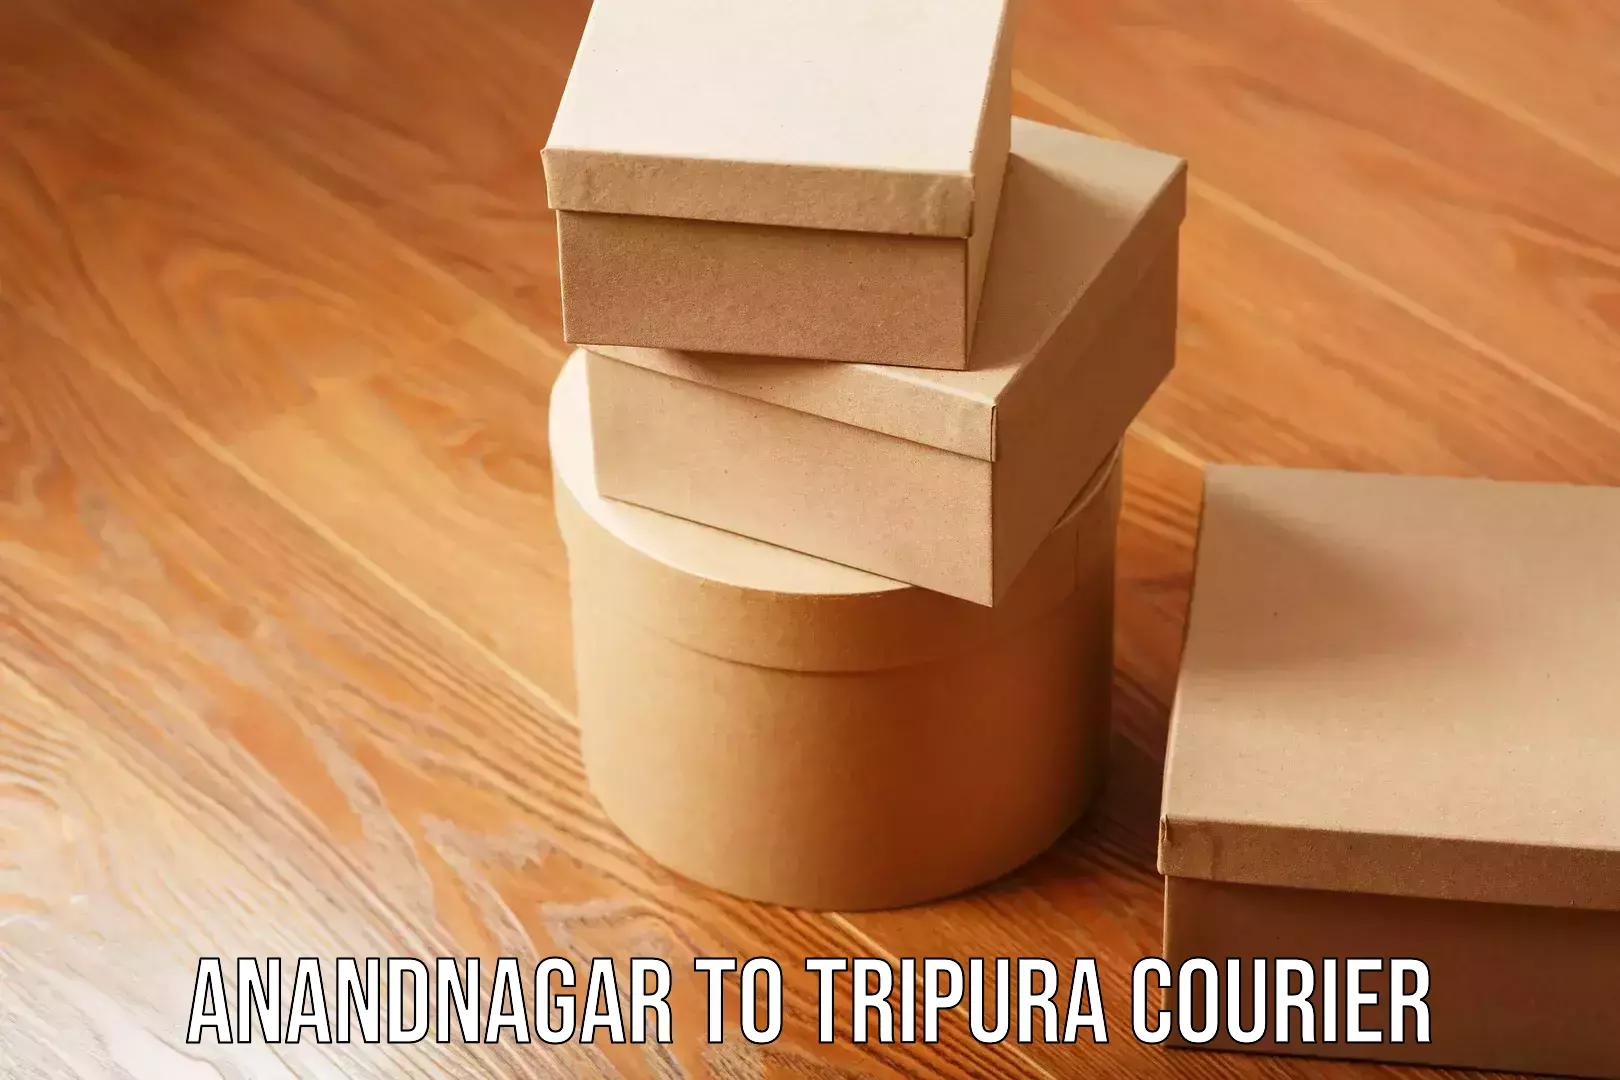 Urgent courier needs Anandnagar to Tripura